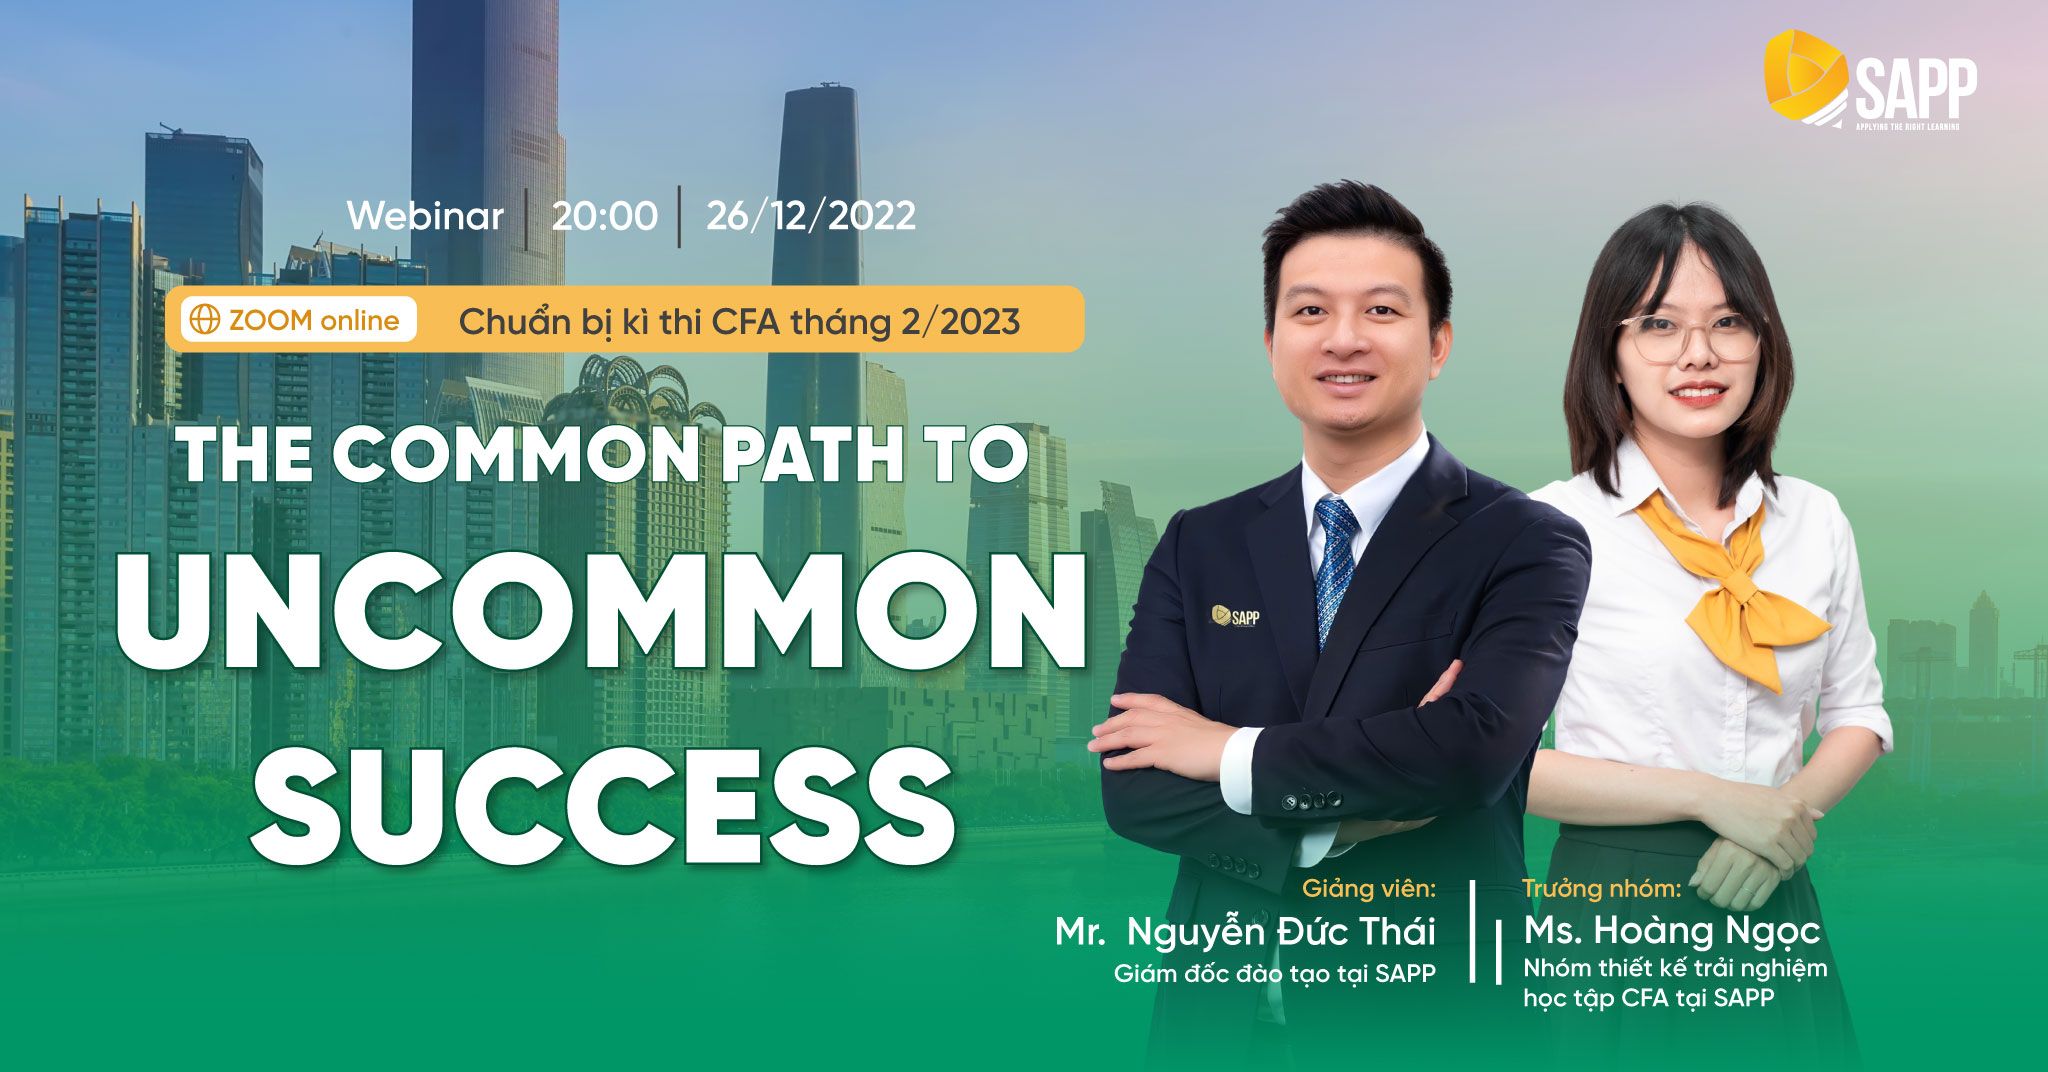 Webinar: Hướng Dẫn Chuẩn Bị Kỳ Thi CFA Tháng 02/2023 - The Common Path To Uncommon Success